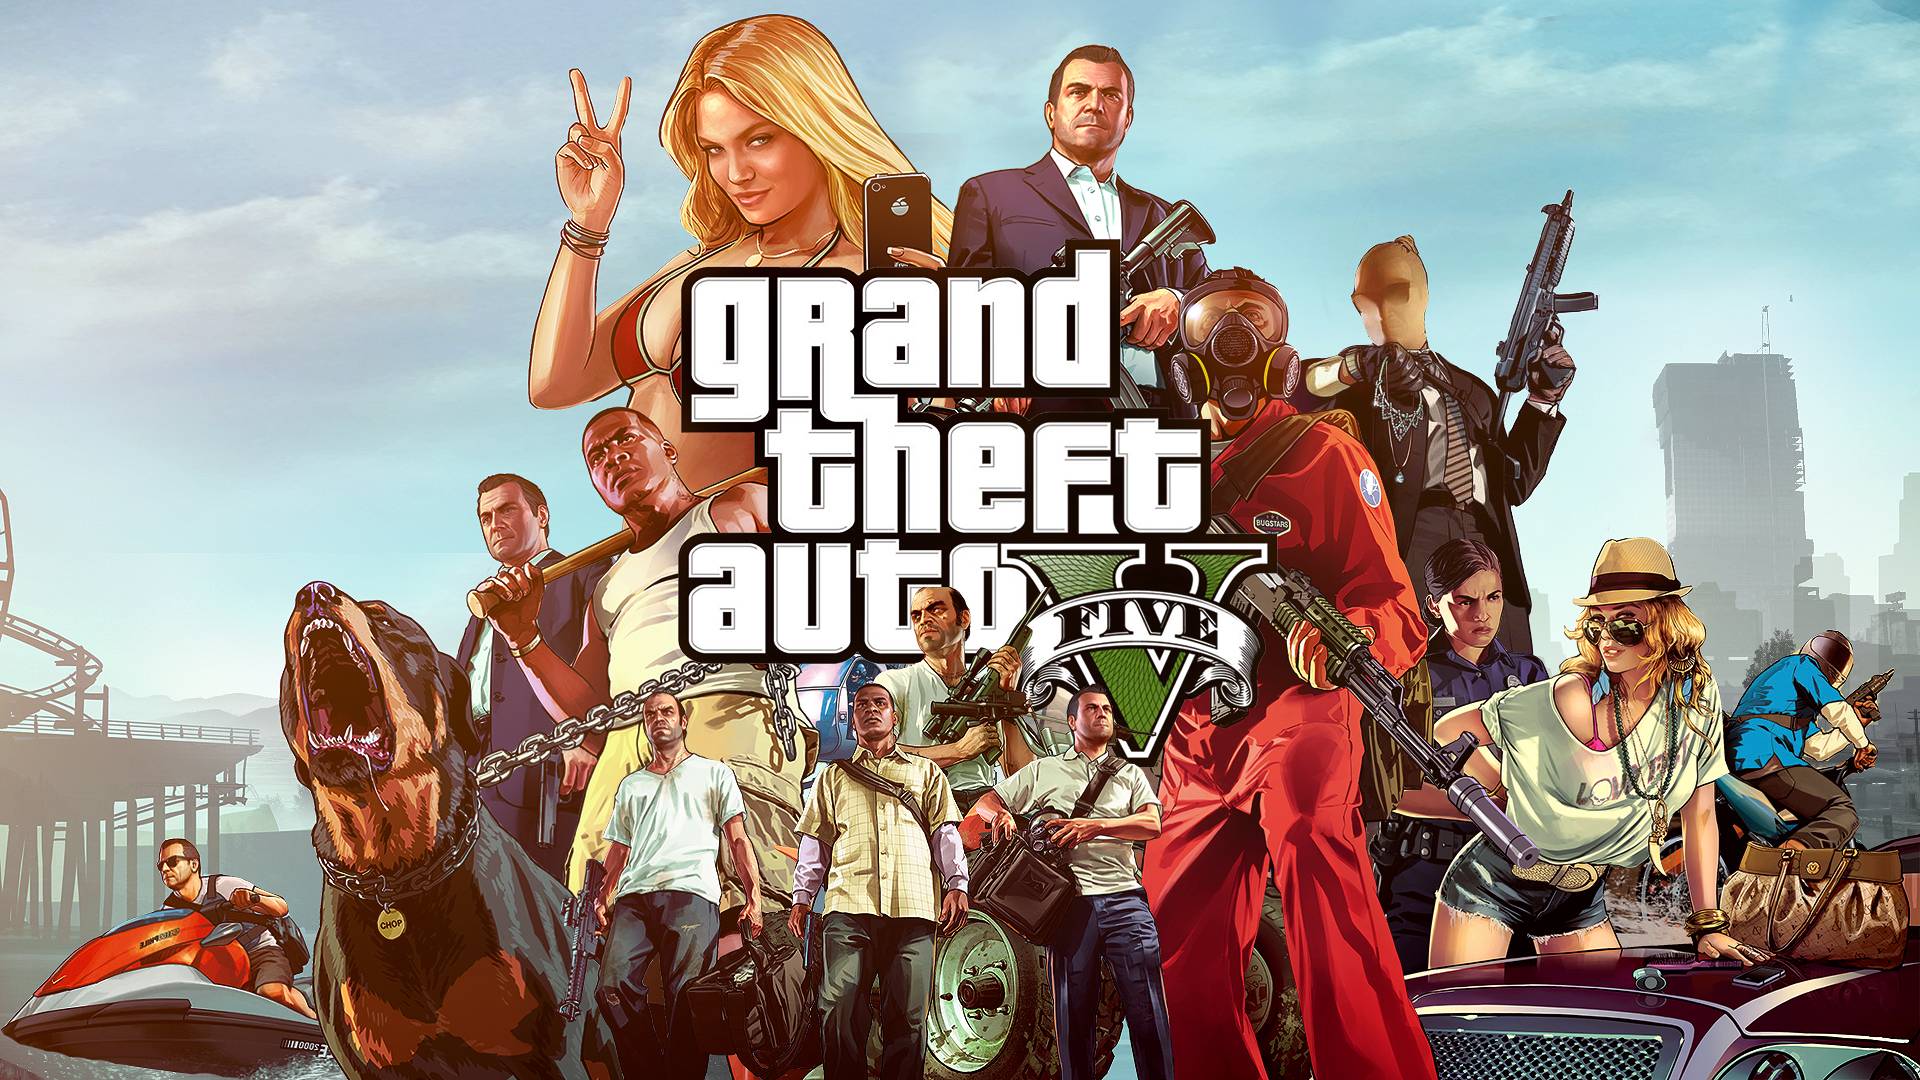 Grand Theft Auto 5 Gta V Wallpaper 40134 in Games